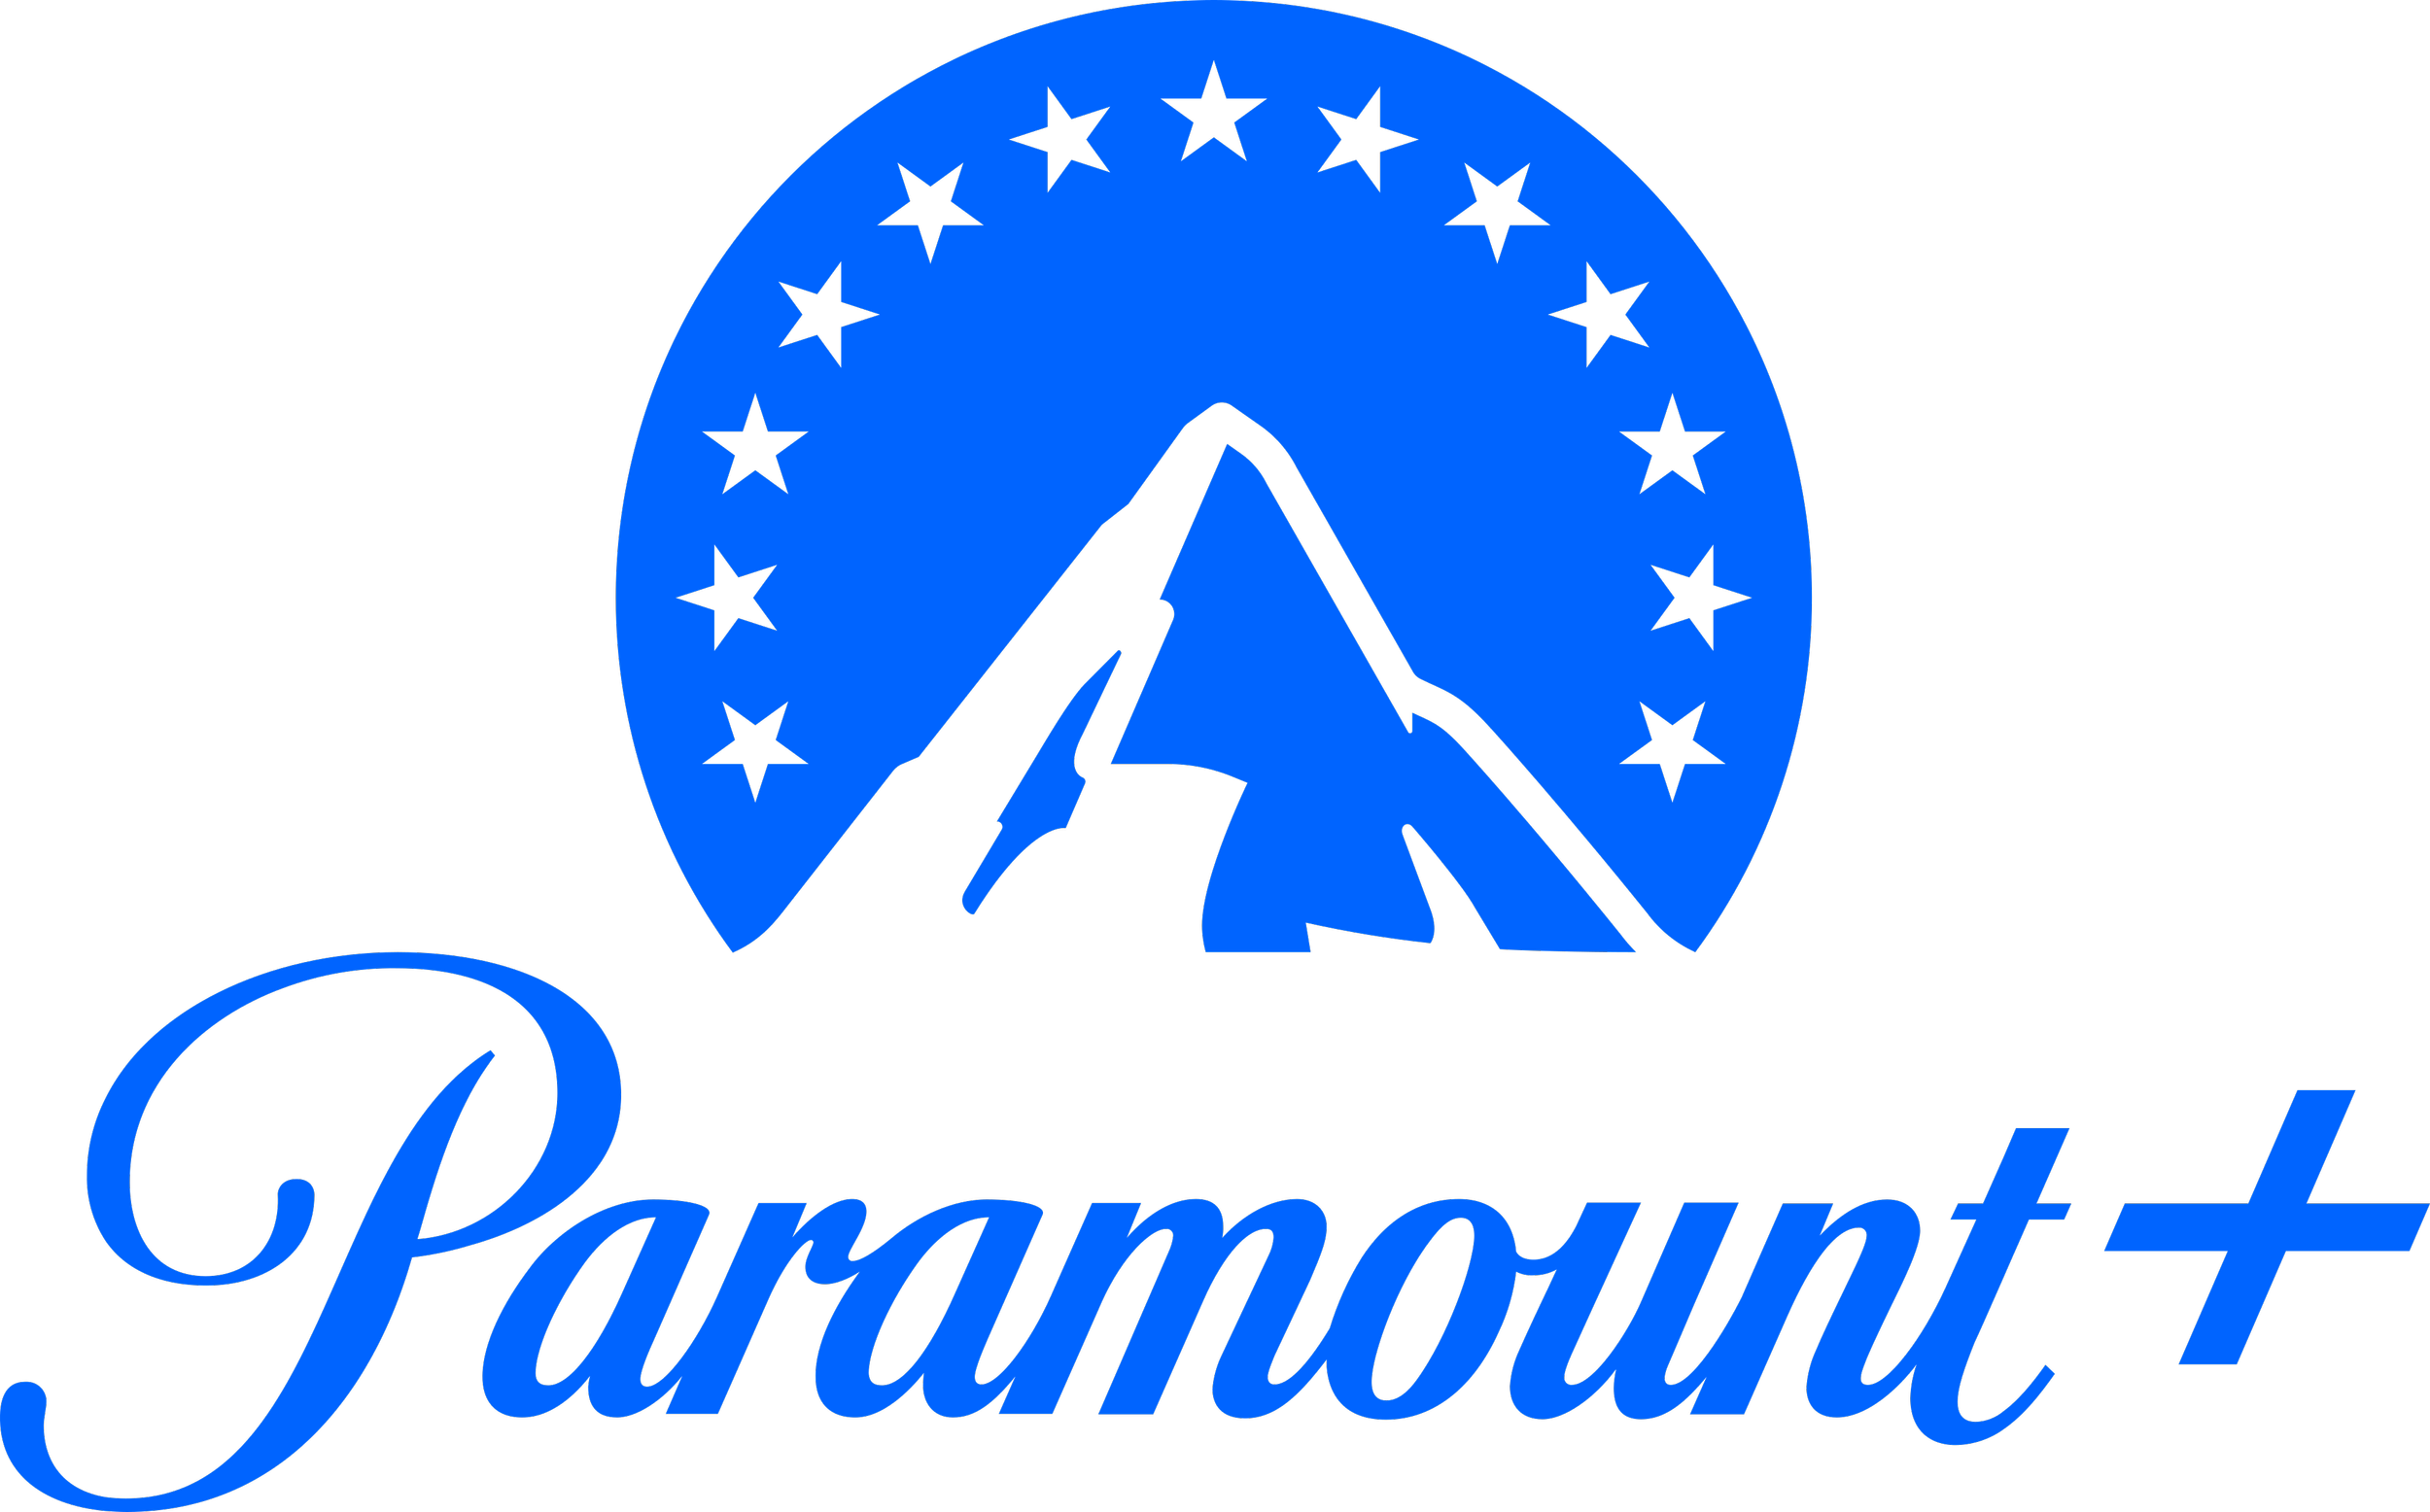 paramount-plus-logo-1.png